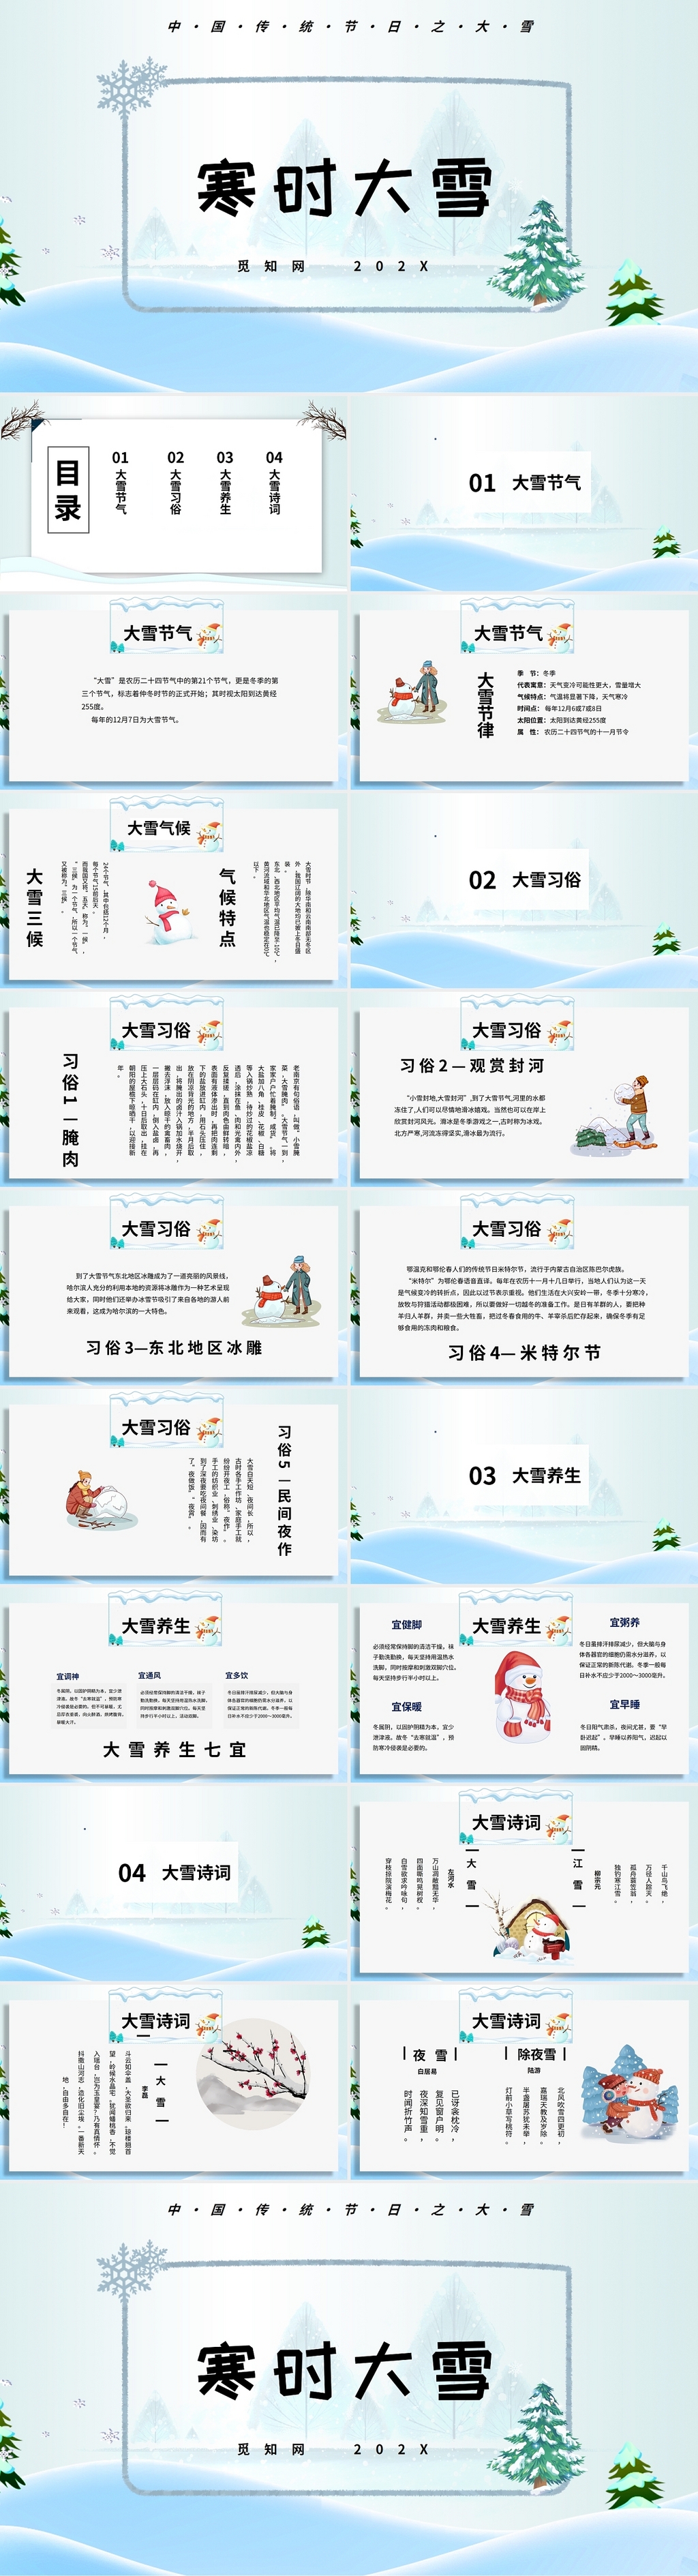 简约卡通中国传统节日之大雪时节ppt大雪二十四节气介绍